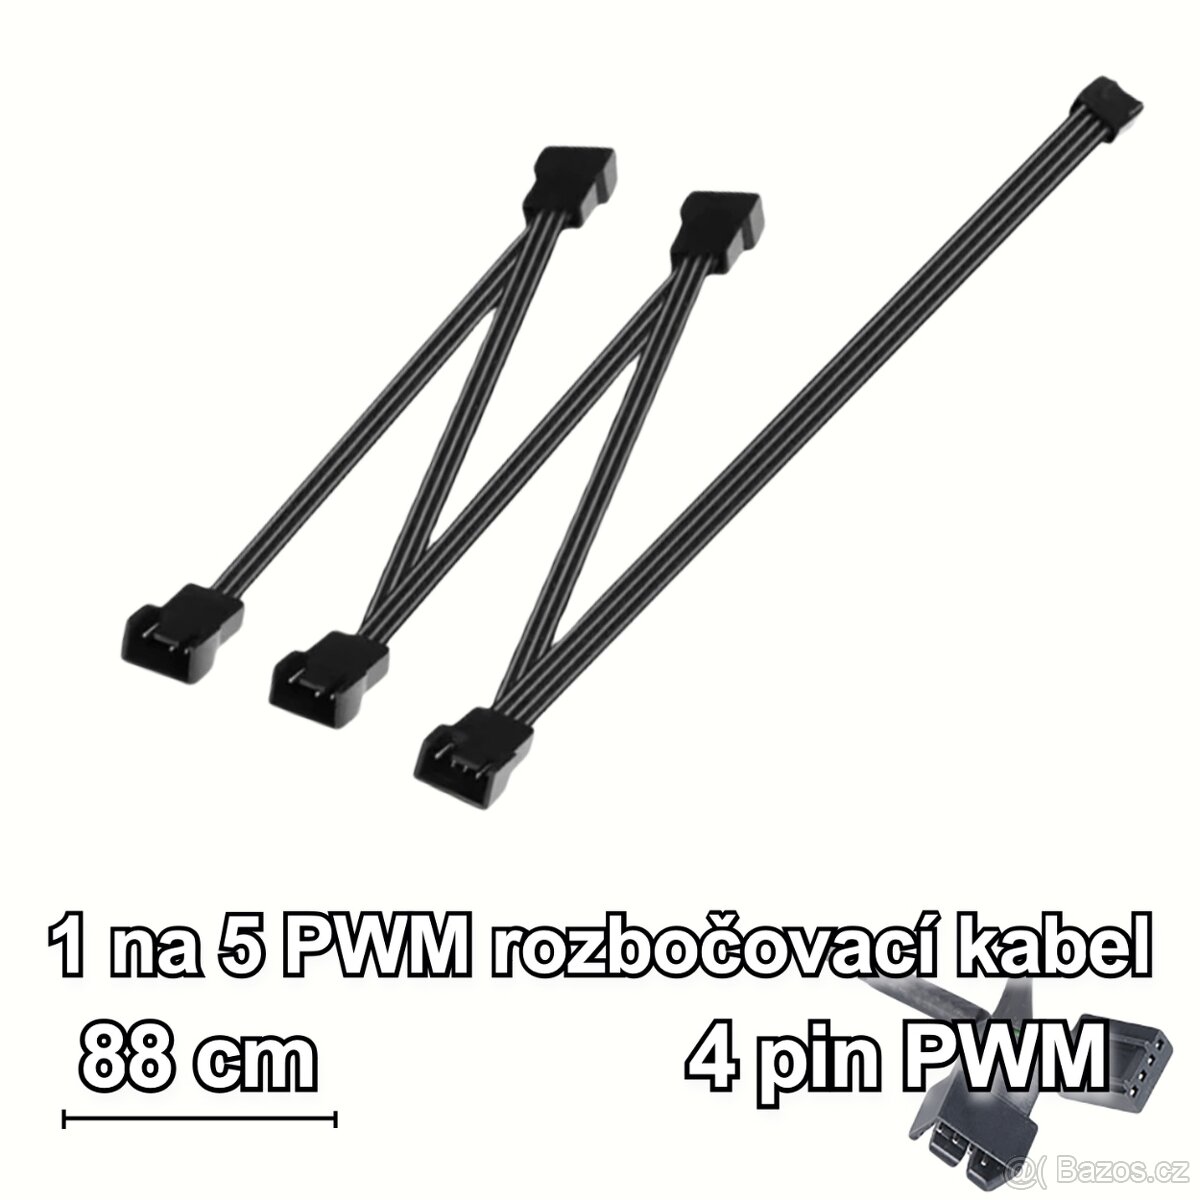 PWM fan splitter, rozbočovací kabel pro připojení větráčků